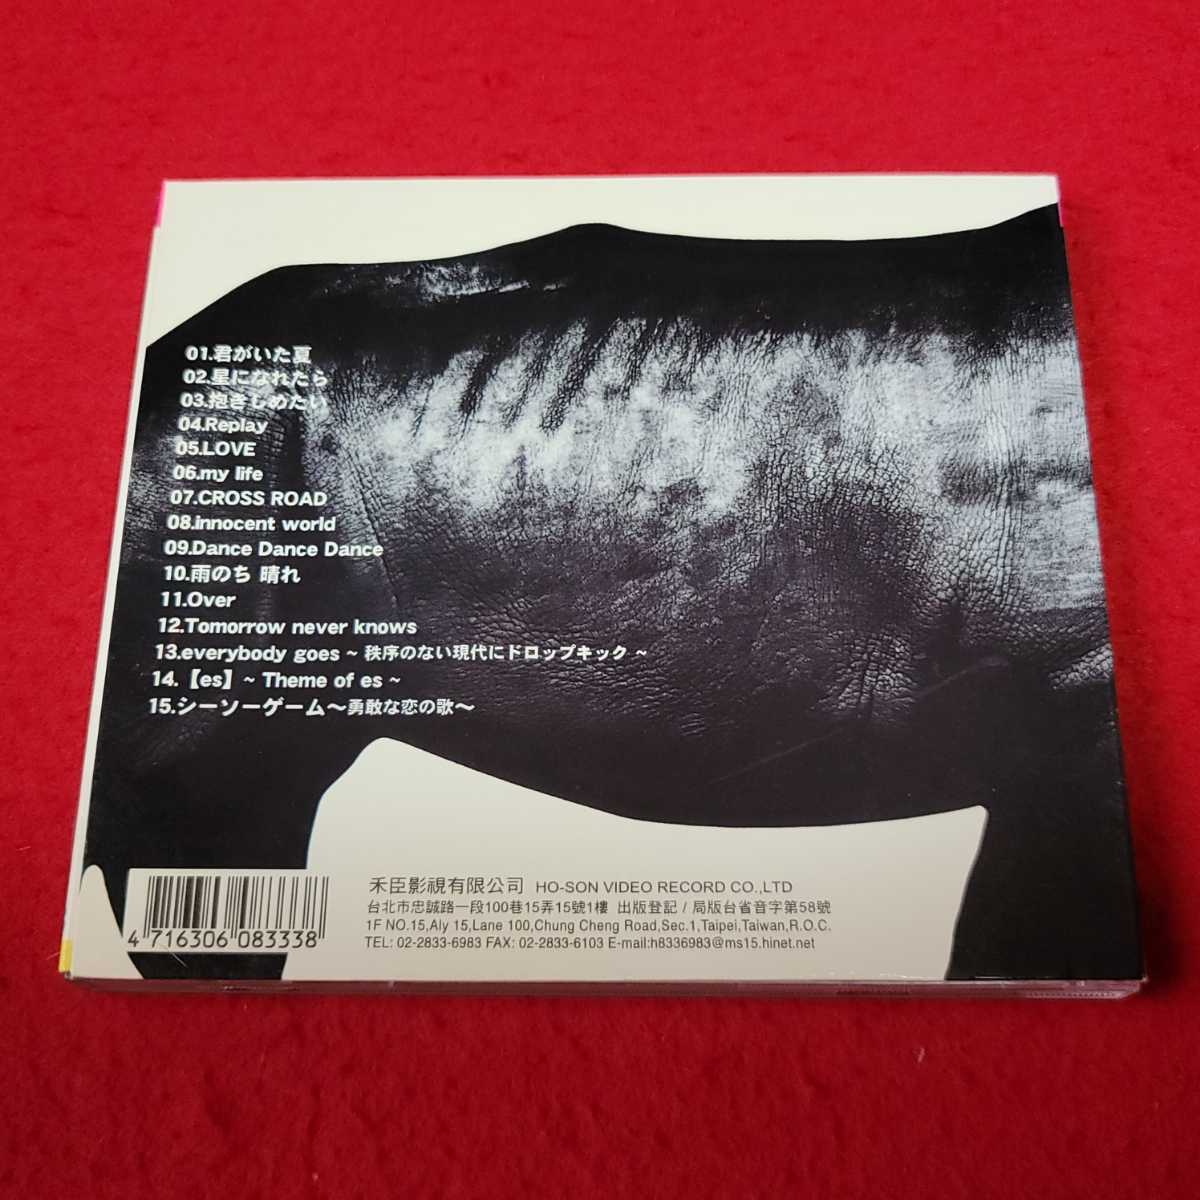 激レア Mr.Children BEST 1992-1995 1996-2000 2枚セット アジア盤 台北 レア ミスチル ミスターチルドレン CD  アルバム A2